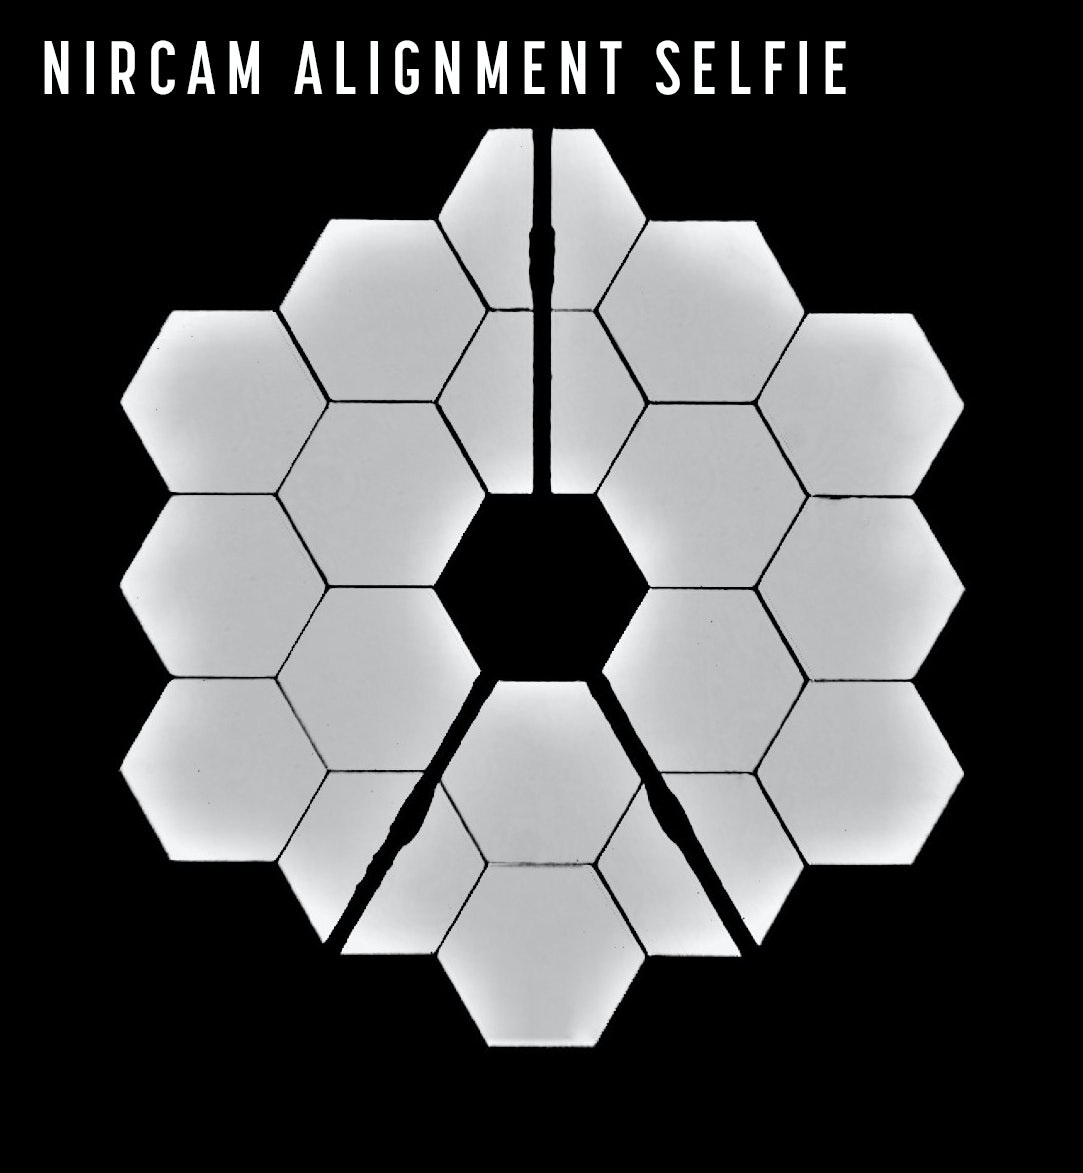 Αφού ευθυγράμμισε τους καθρέφτες του, το Webb τράβηξε αυτή τη «selfie» για να δείξει τη νέα του εμφάνιση.NASA/STScI